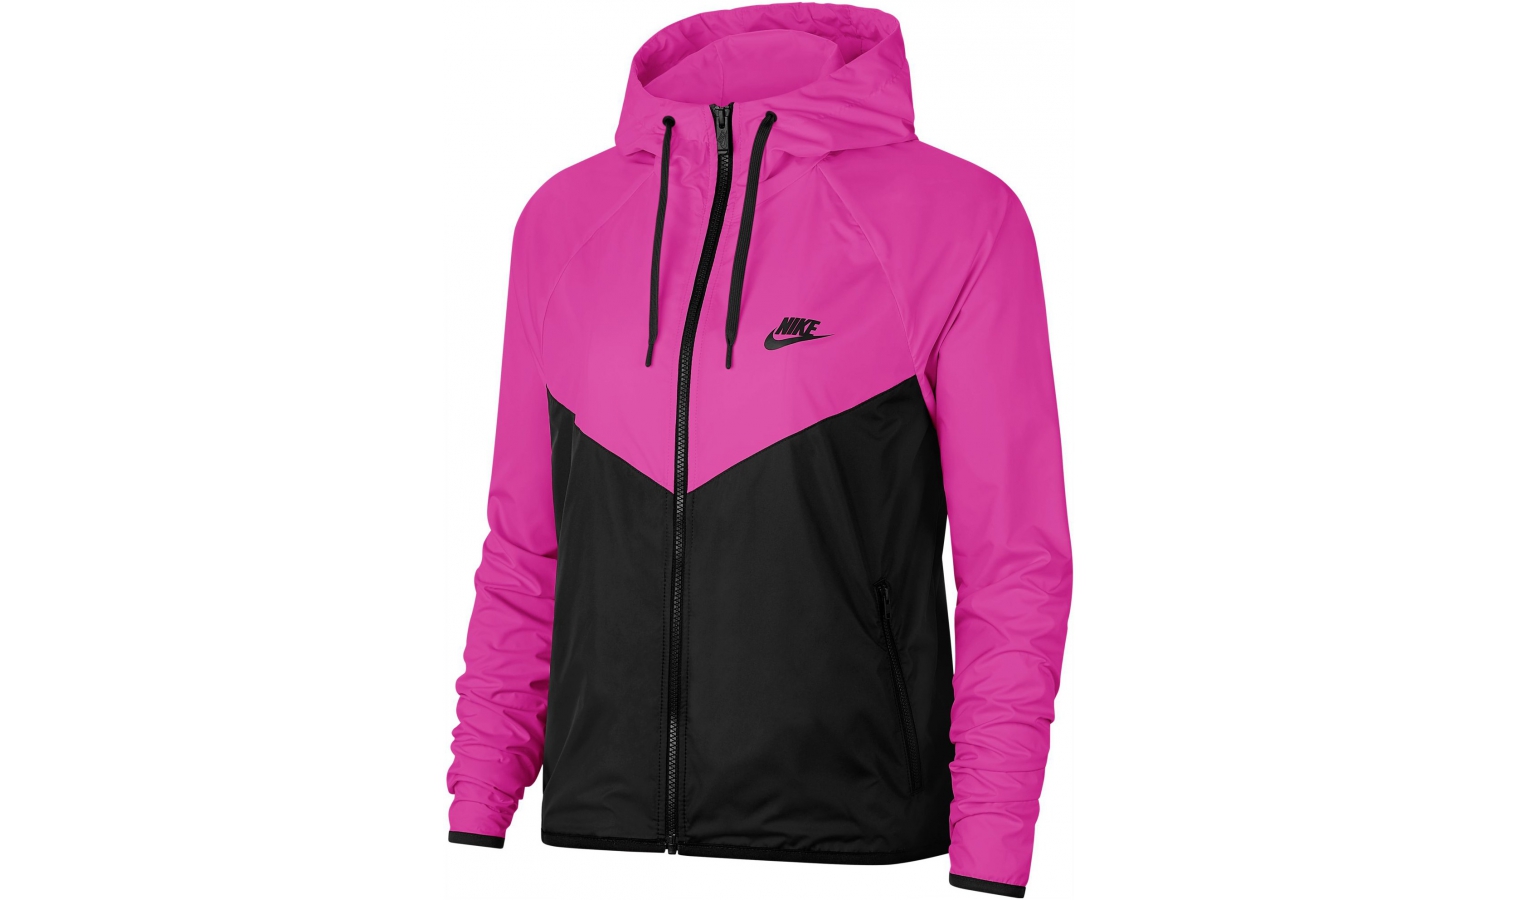 Womens leisure jacket Nike SPORTSWEAR WINDRUNNER W pink | AD Sport.store